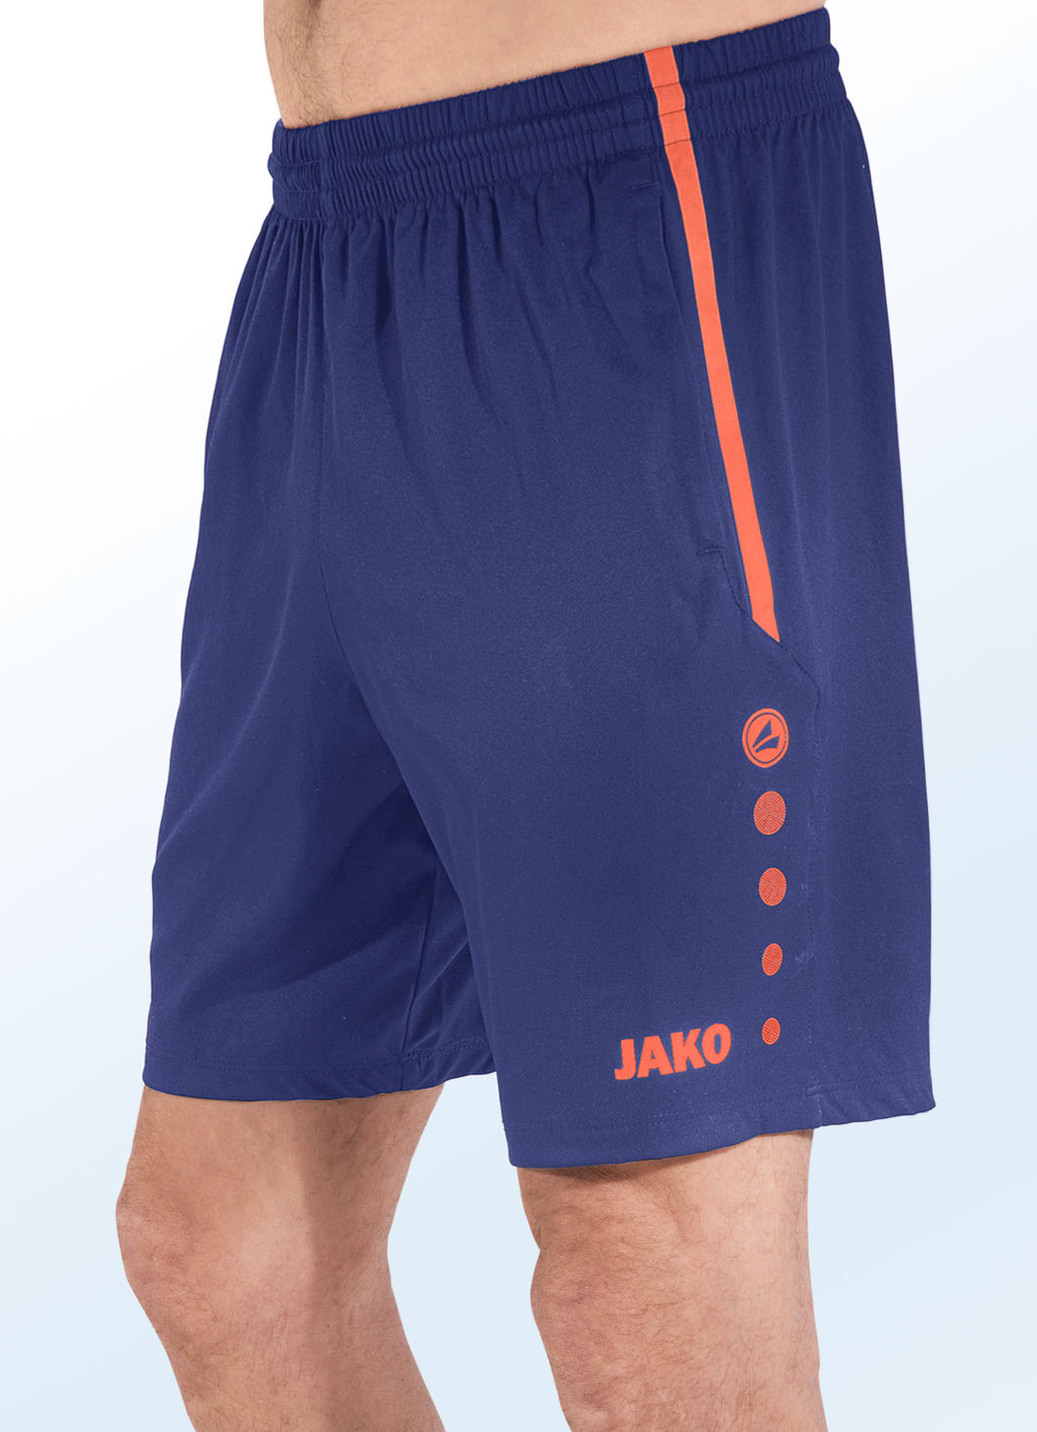 Shorts von "Jako" in 4 Farben, Größe 4XL (62), Marine-Orange von Jako